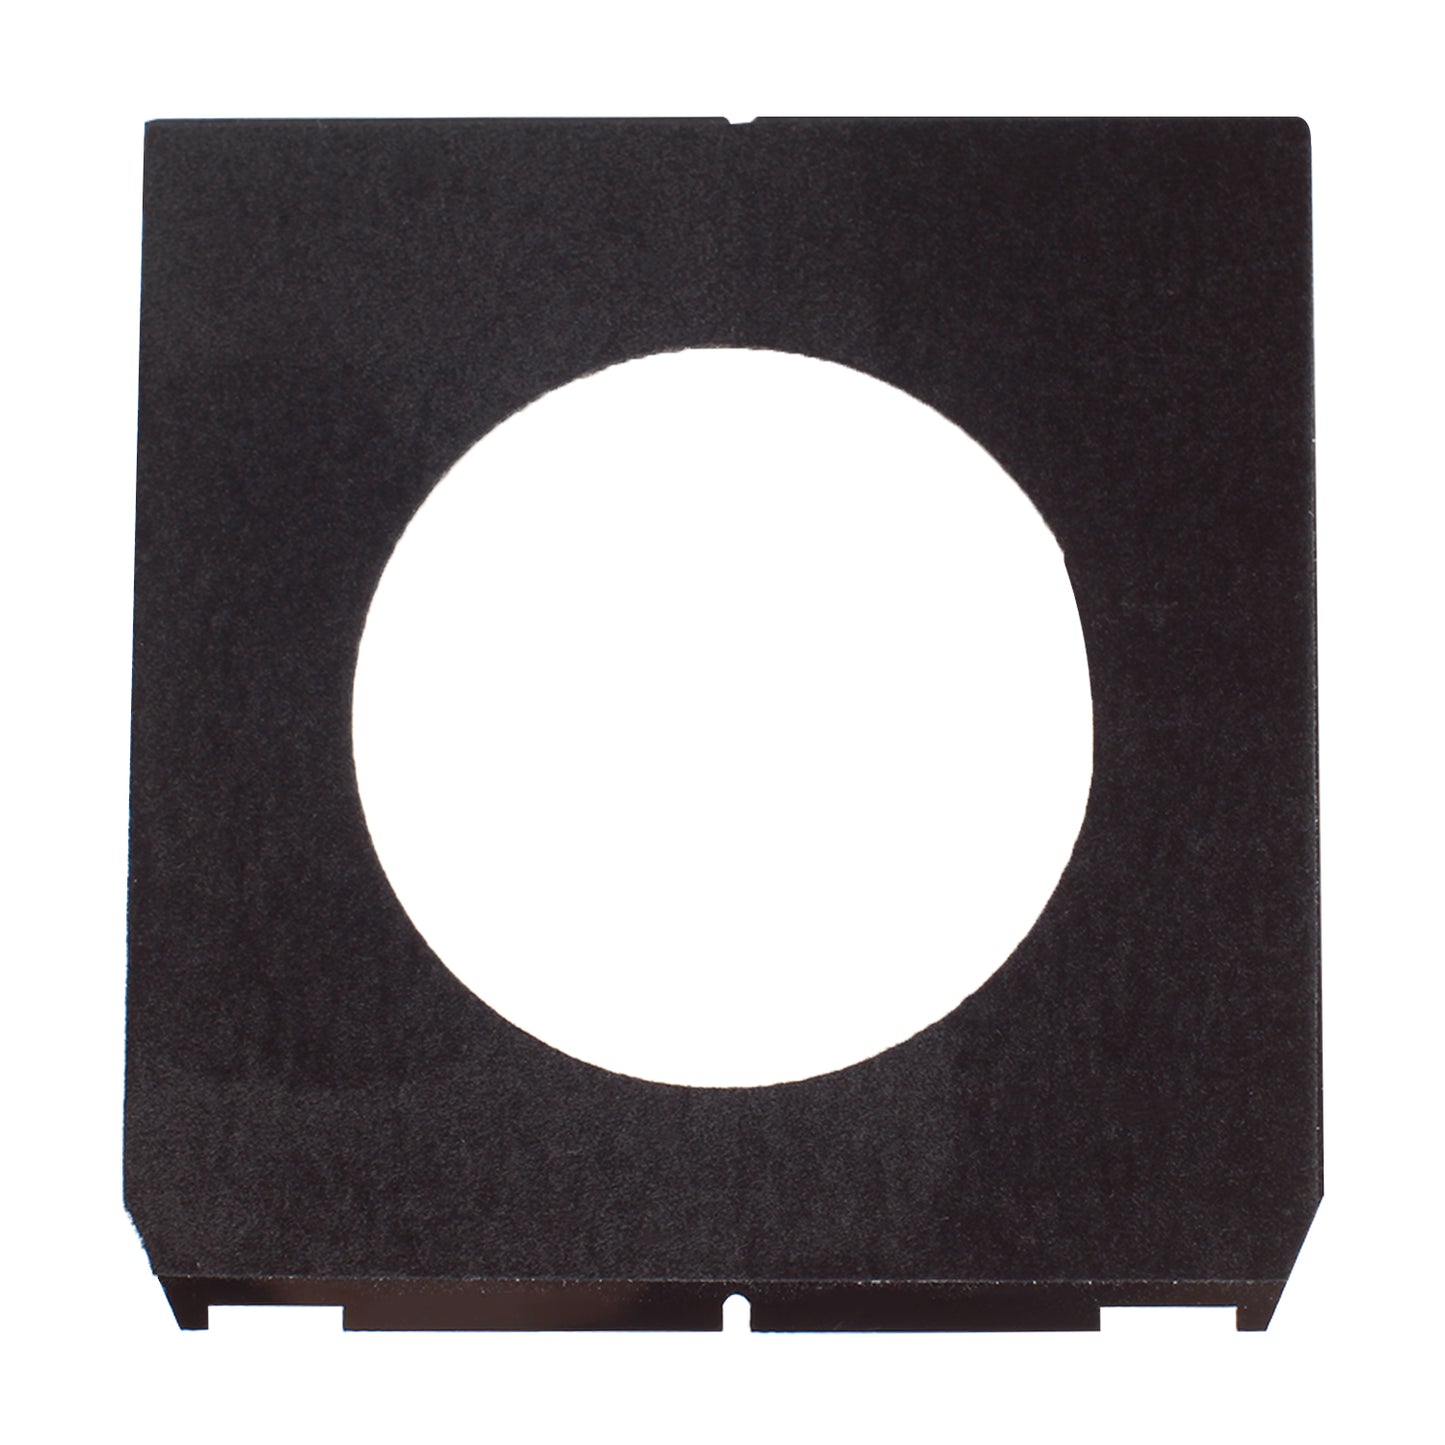 Acryl Compur Prontor Copal #3 Objektivplatine 65 mm Linhof-Stil für 4 x 5 Zoll Großformatkamera Technika Wista ShenHao Ebony Chamonix